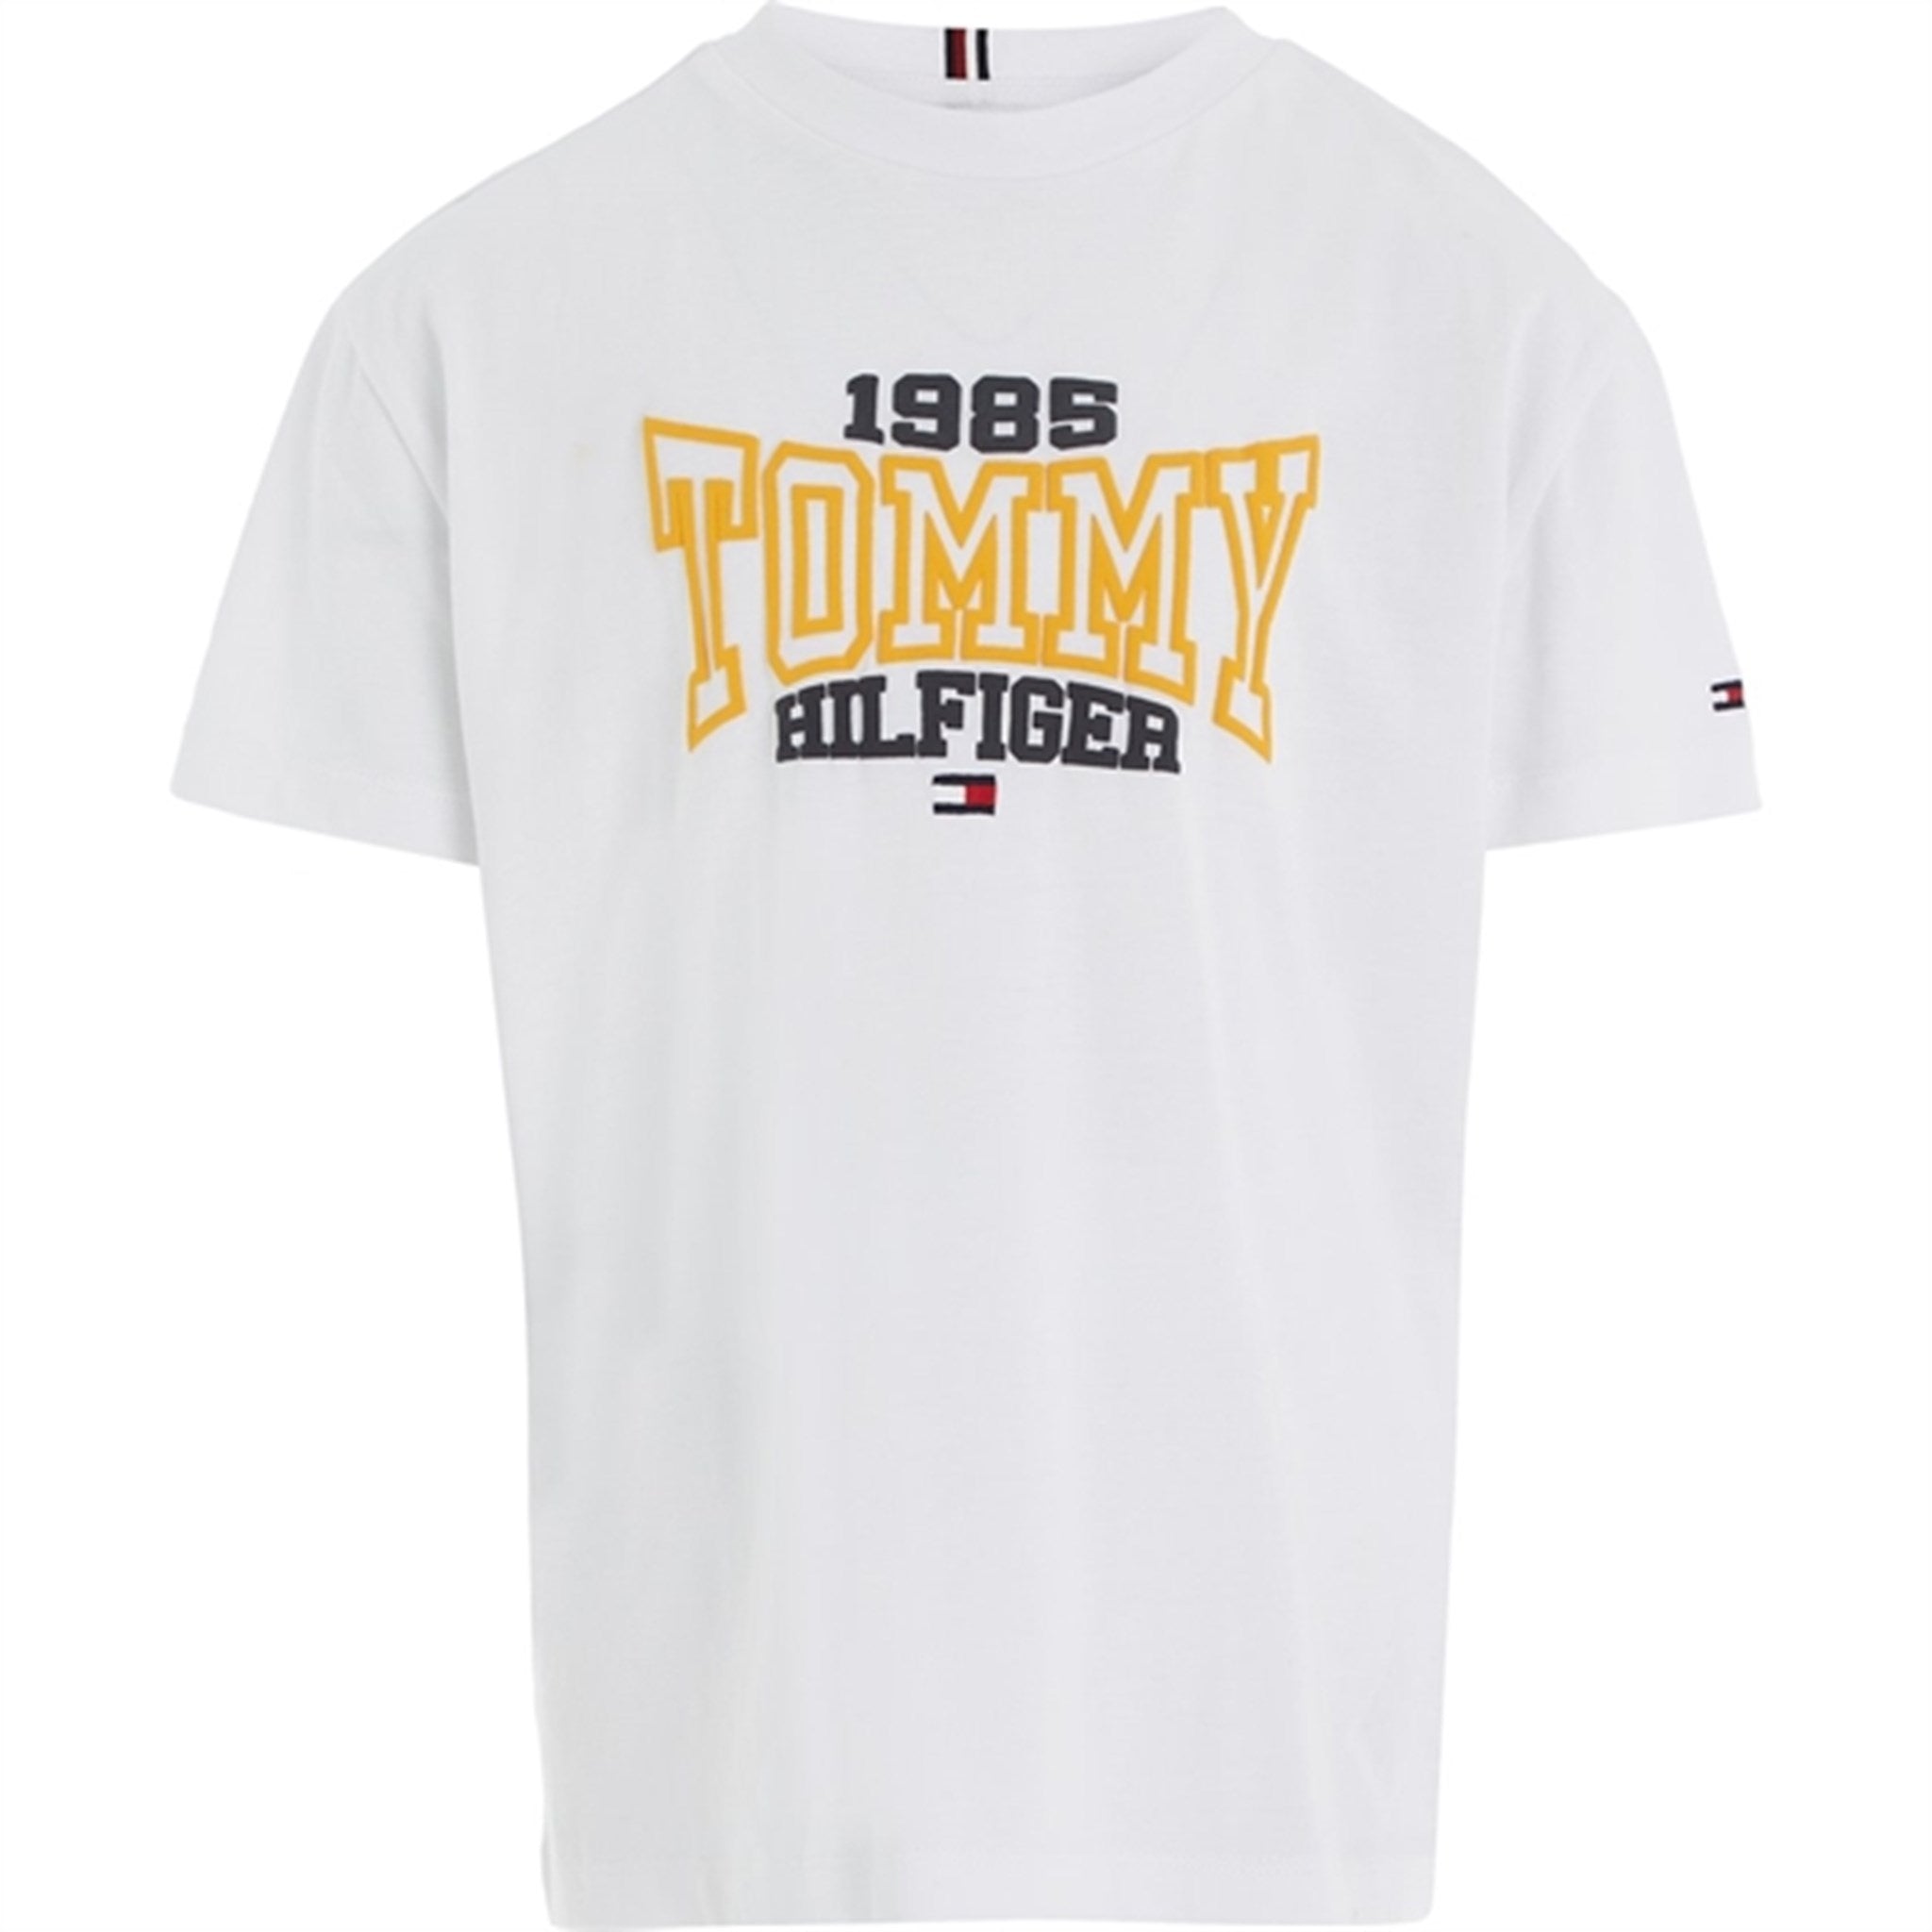 Tommy Hilfiger 1985 Varsity T-Shirt White